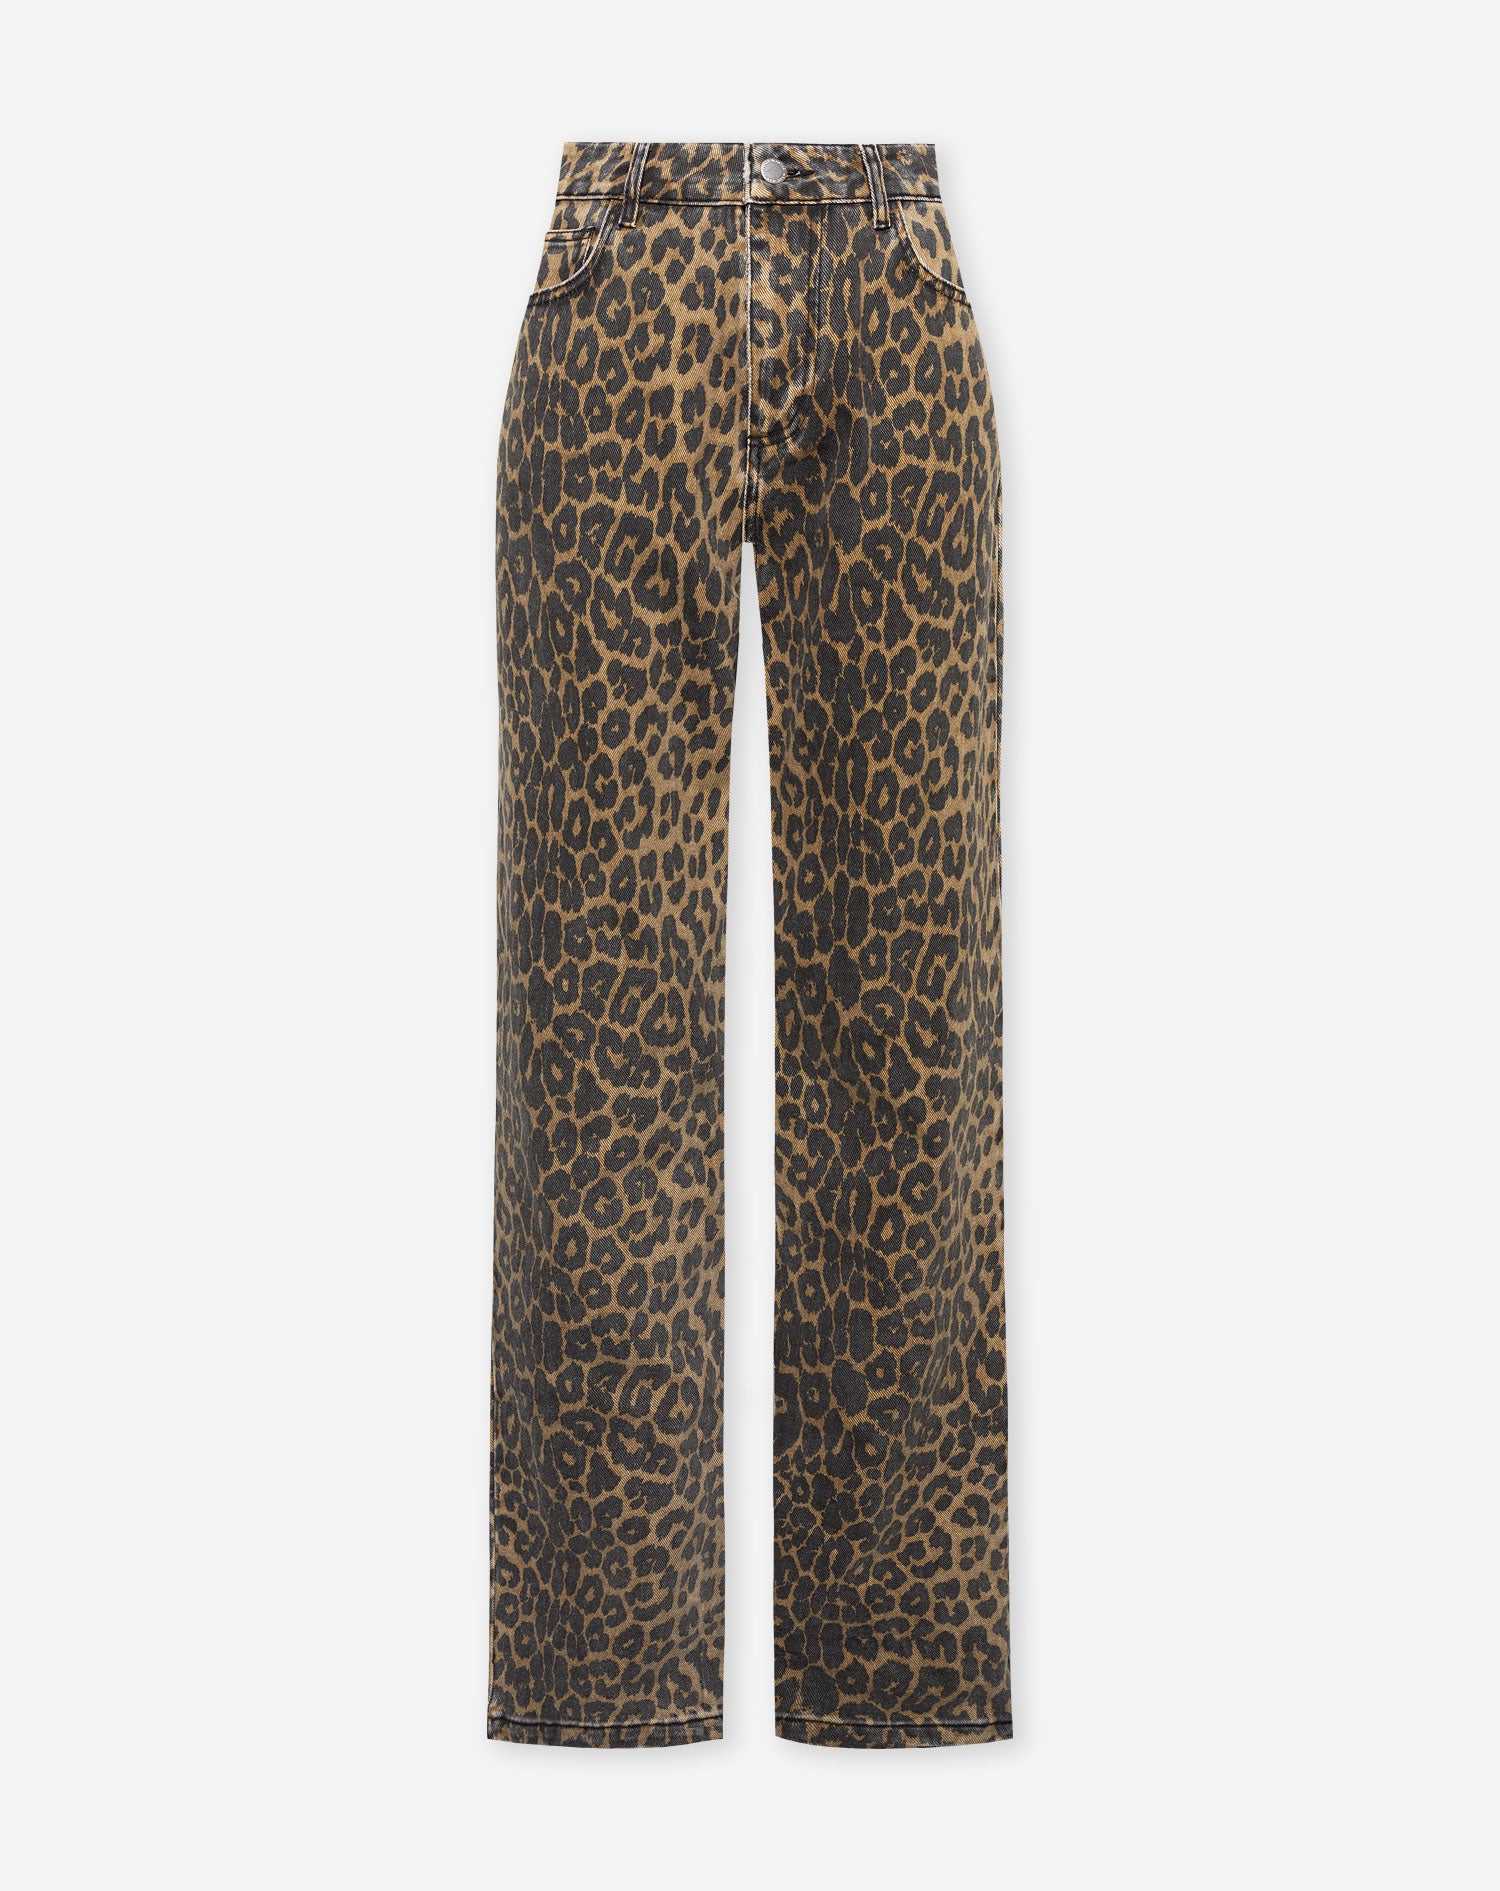 9 Street Style Ways to Wear Leopard Print like a Wild Cat ...